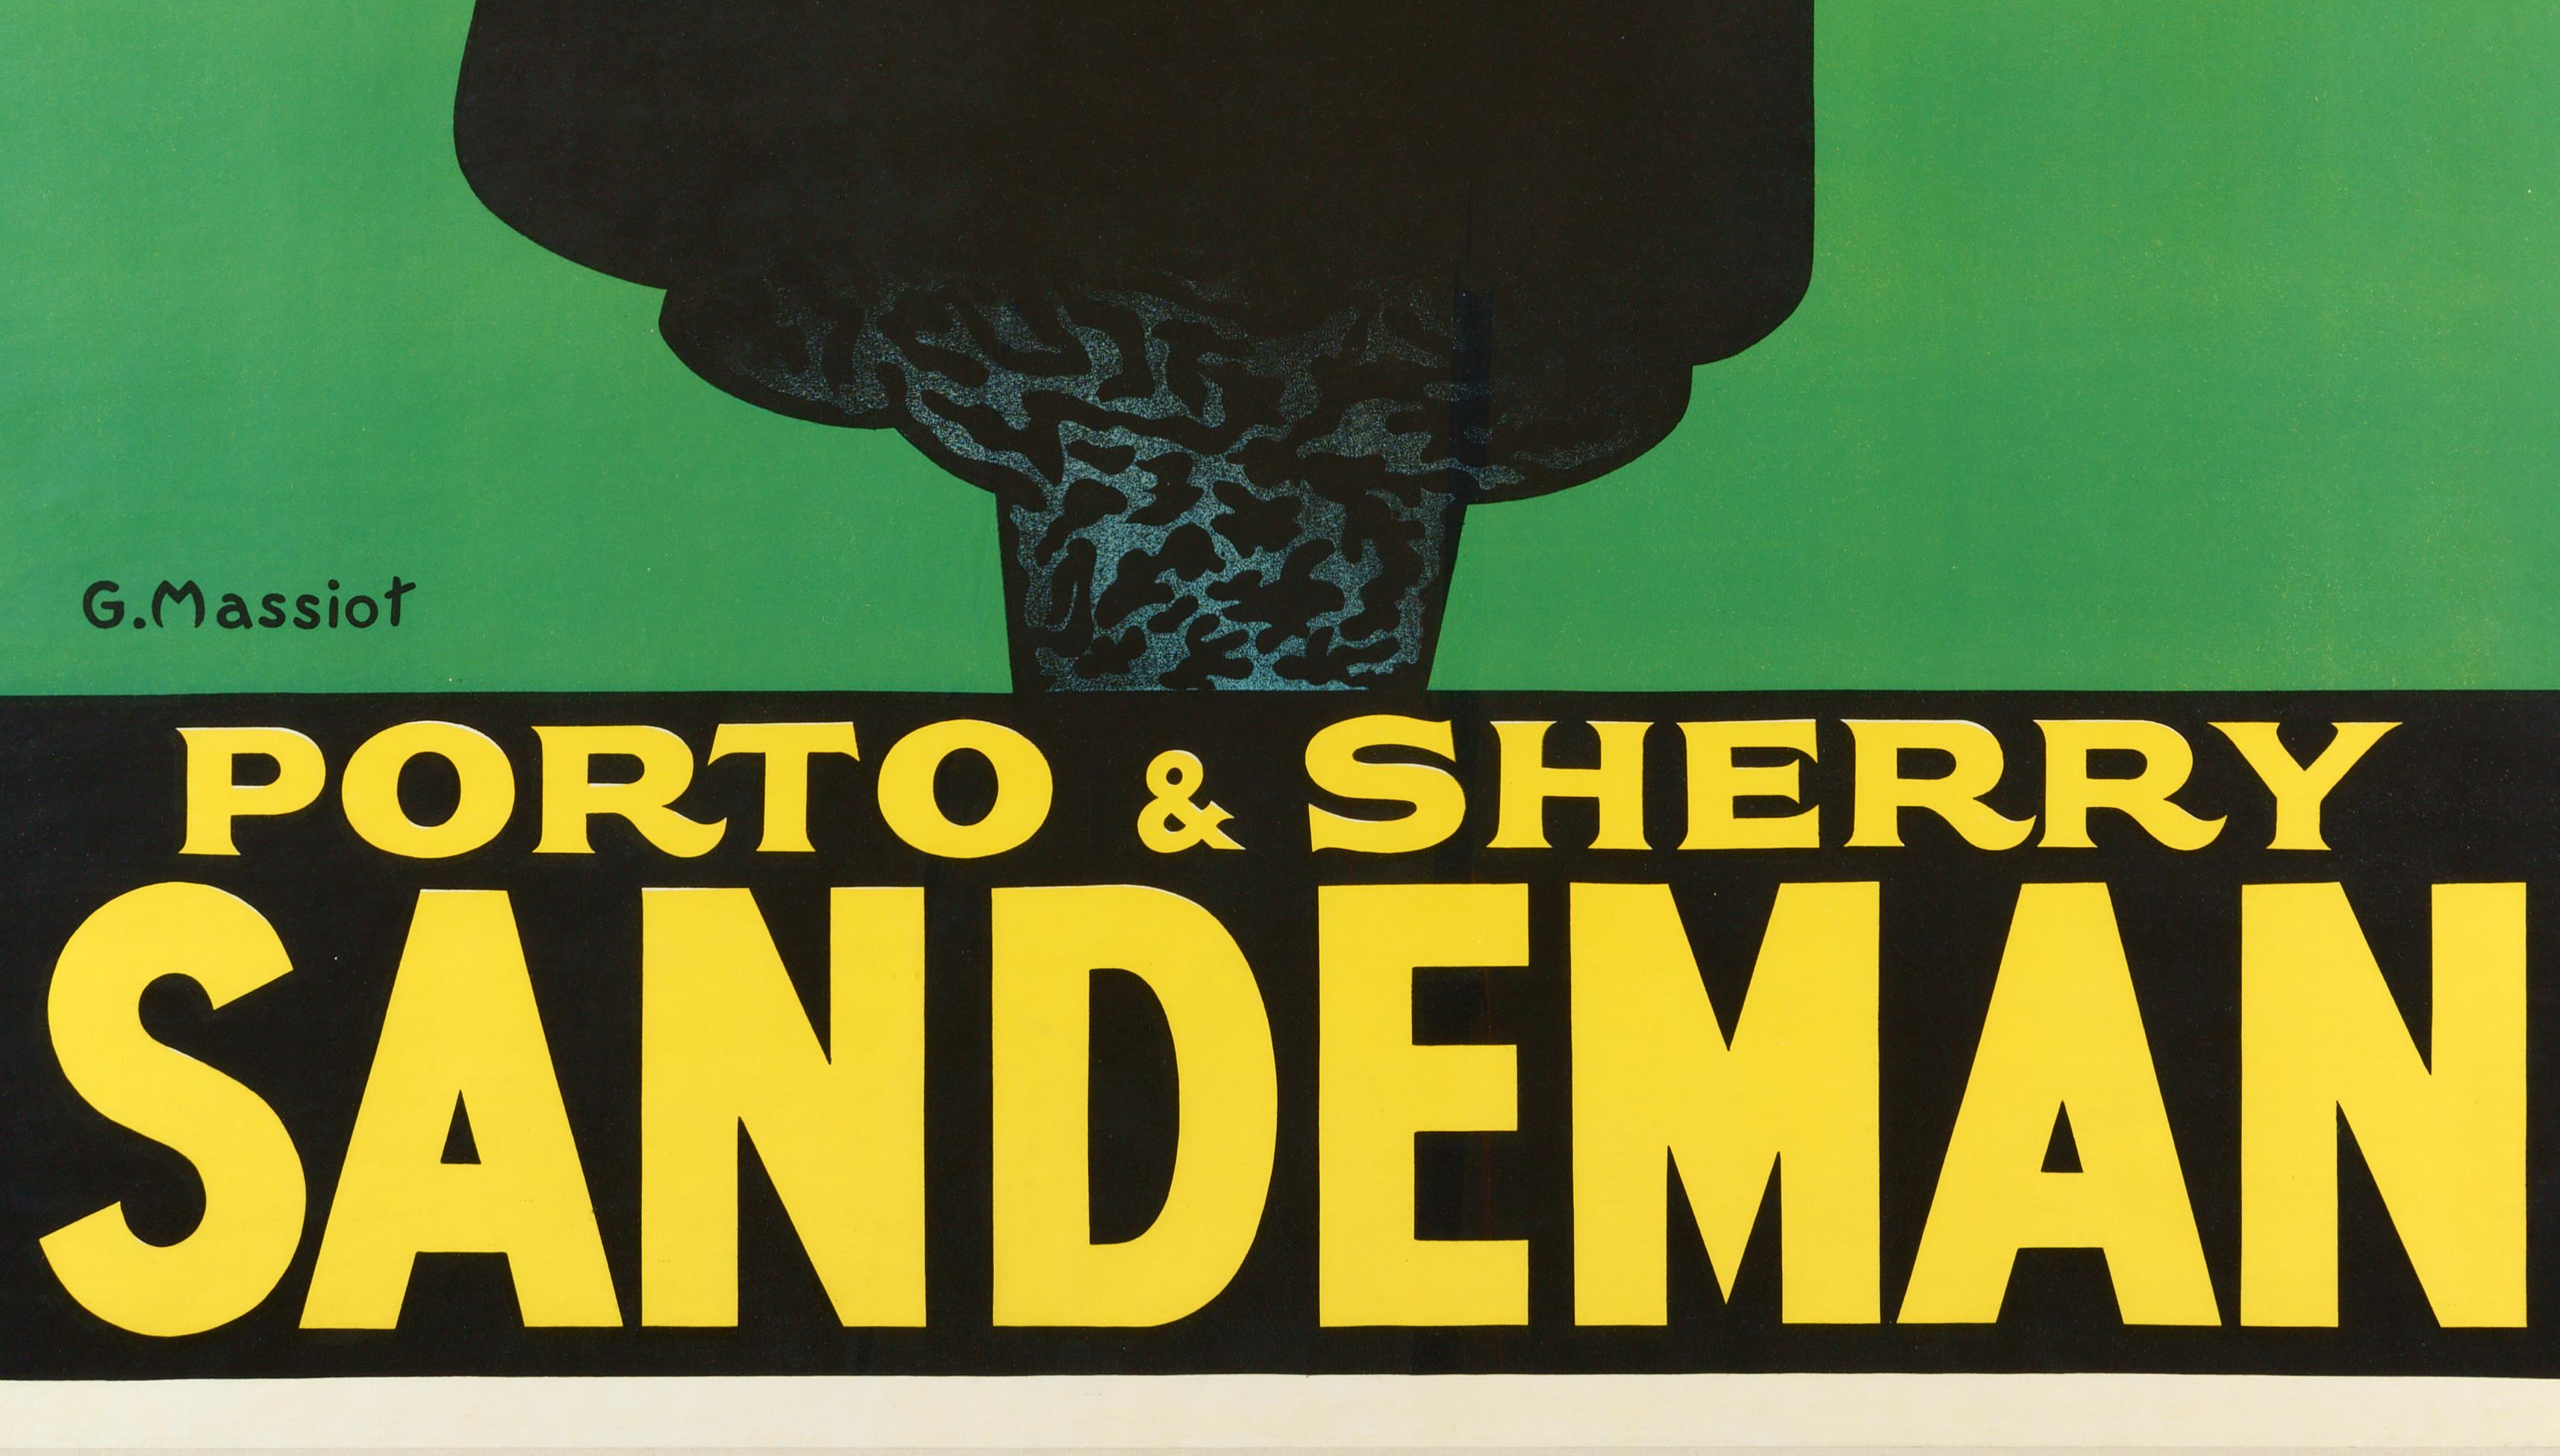 Sandeman  Porto & Sherry - Affiche originale emblématique - Noir Figurative Print par George Massiot Brown